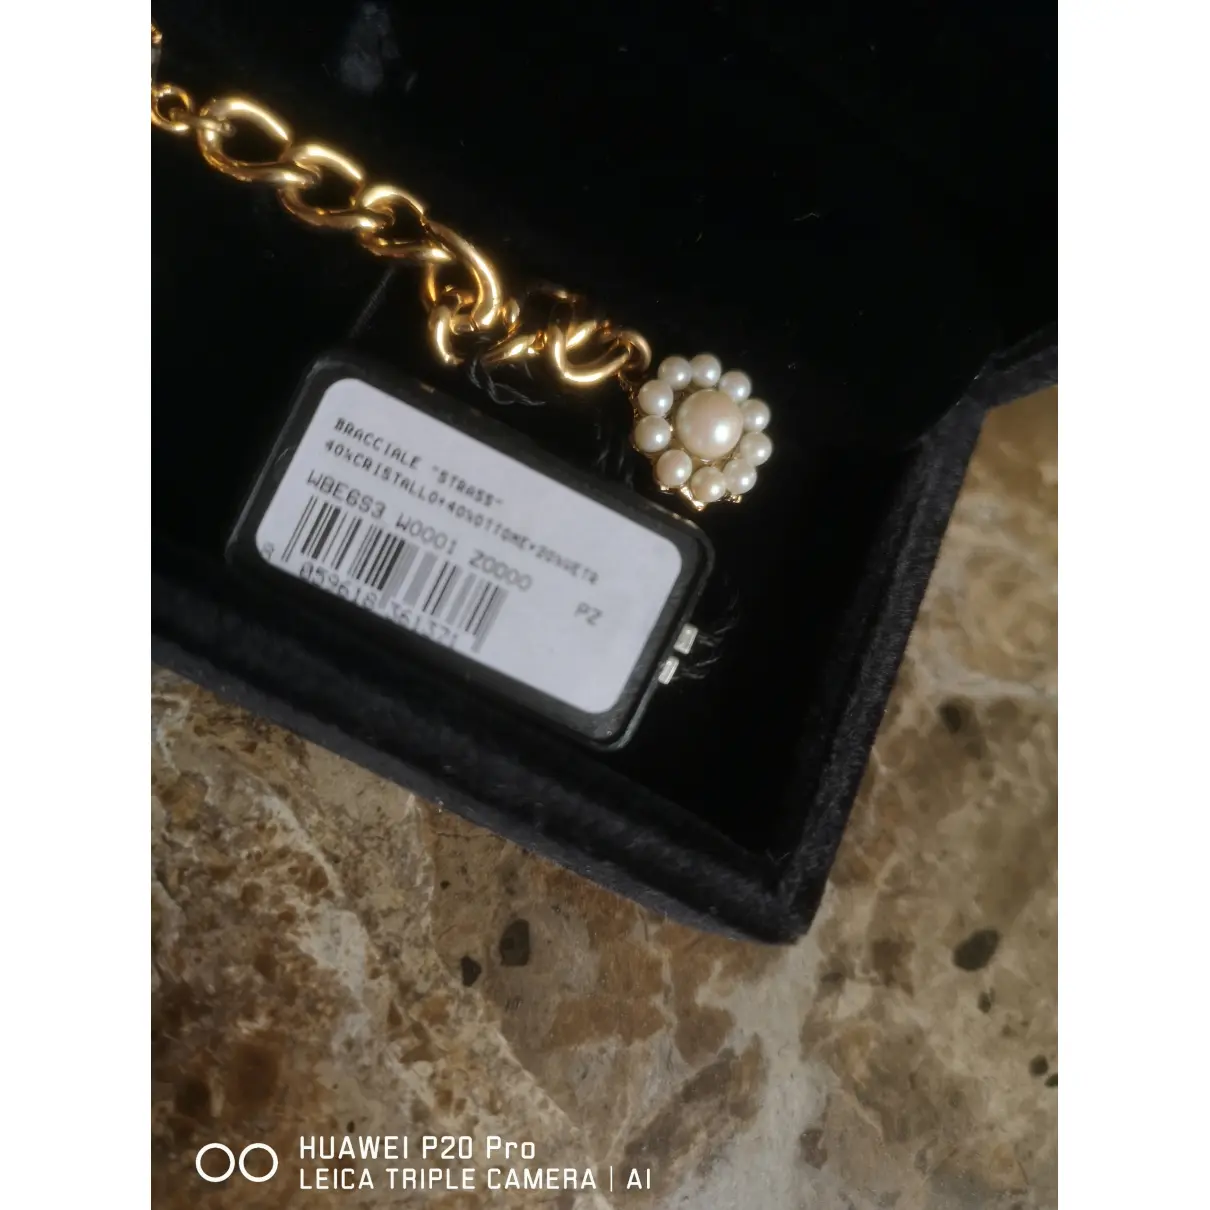 Crystal bracelet Dolce & Gabbana